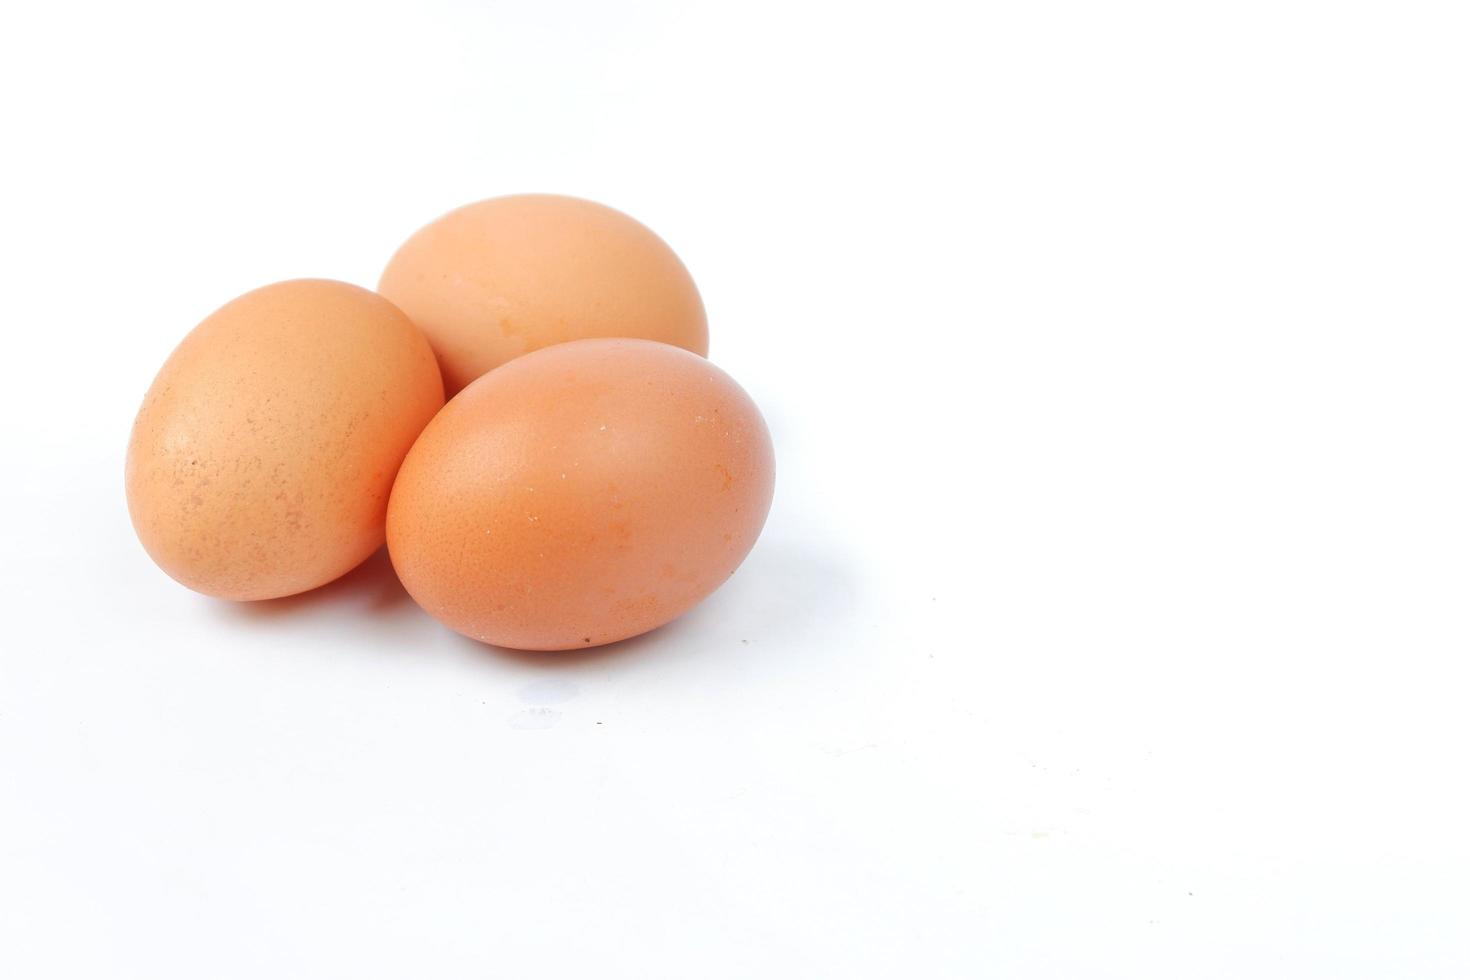 huevos de gallina aislado sobre un fondo blanco foto